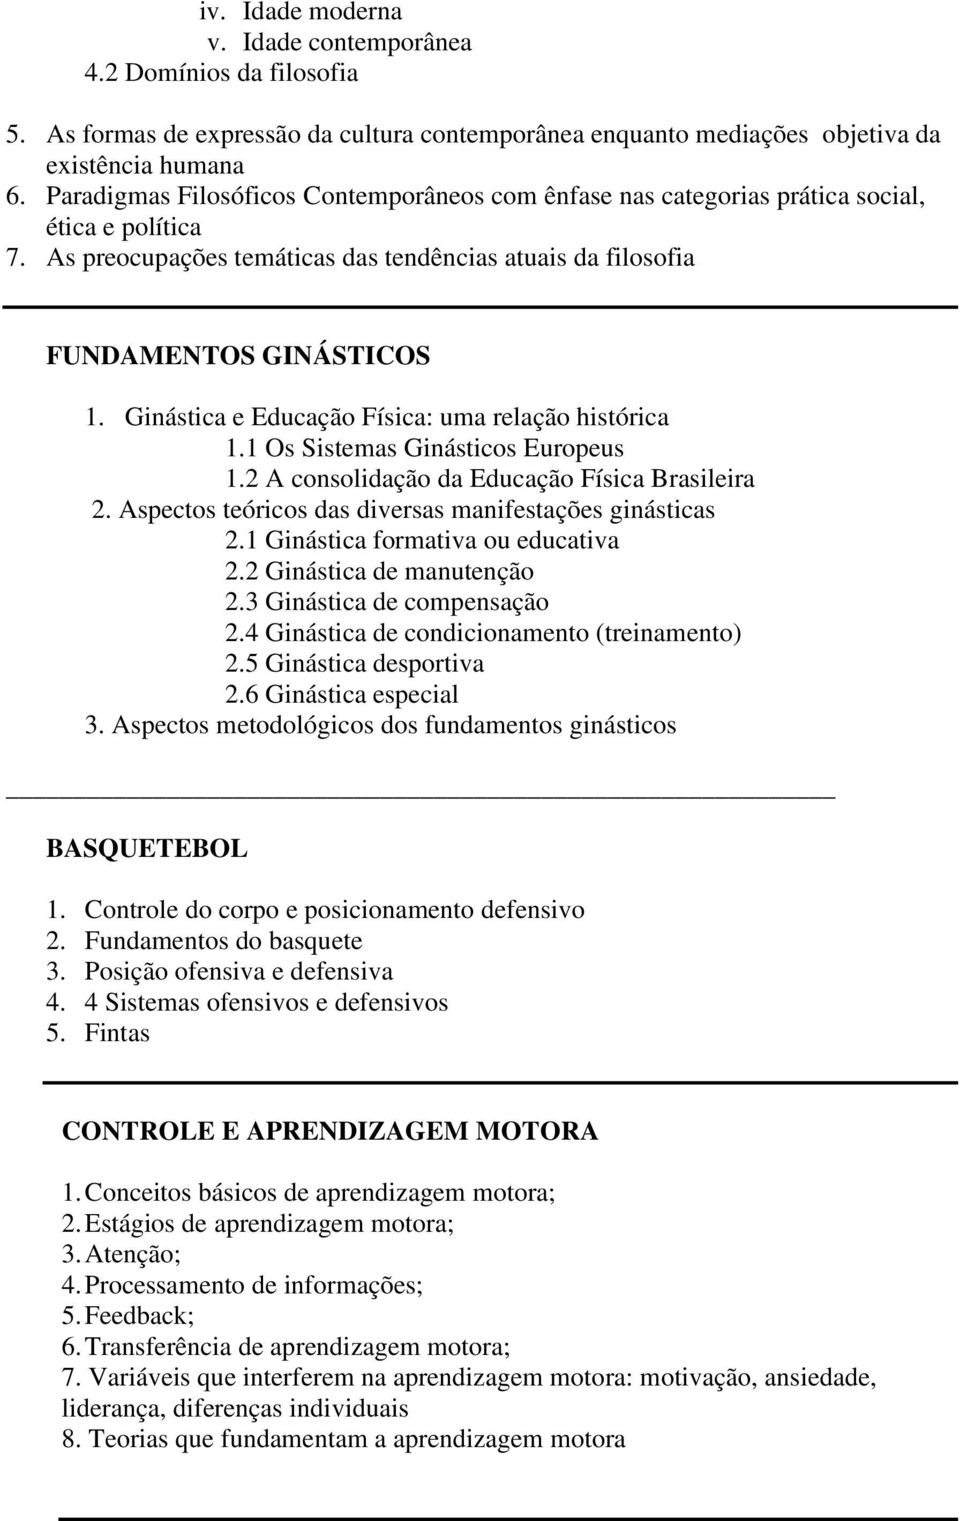 Ginástica e Educação Física: uma relação histórica 1.1 Os Sistemas Ginásticos Europeus 1.2 A consolidação da Educação Física Brasileira 2. Aspectos teóricos das diversas manifestações ginásticas 2.